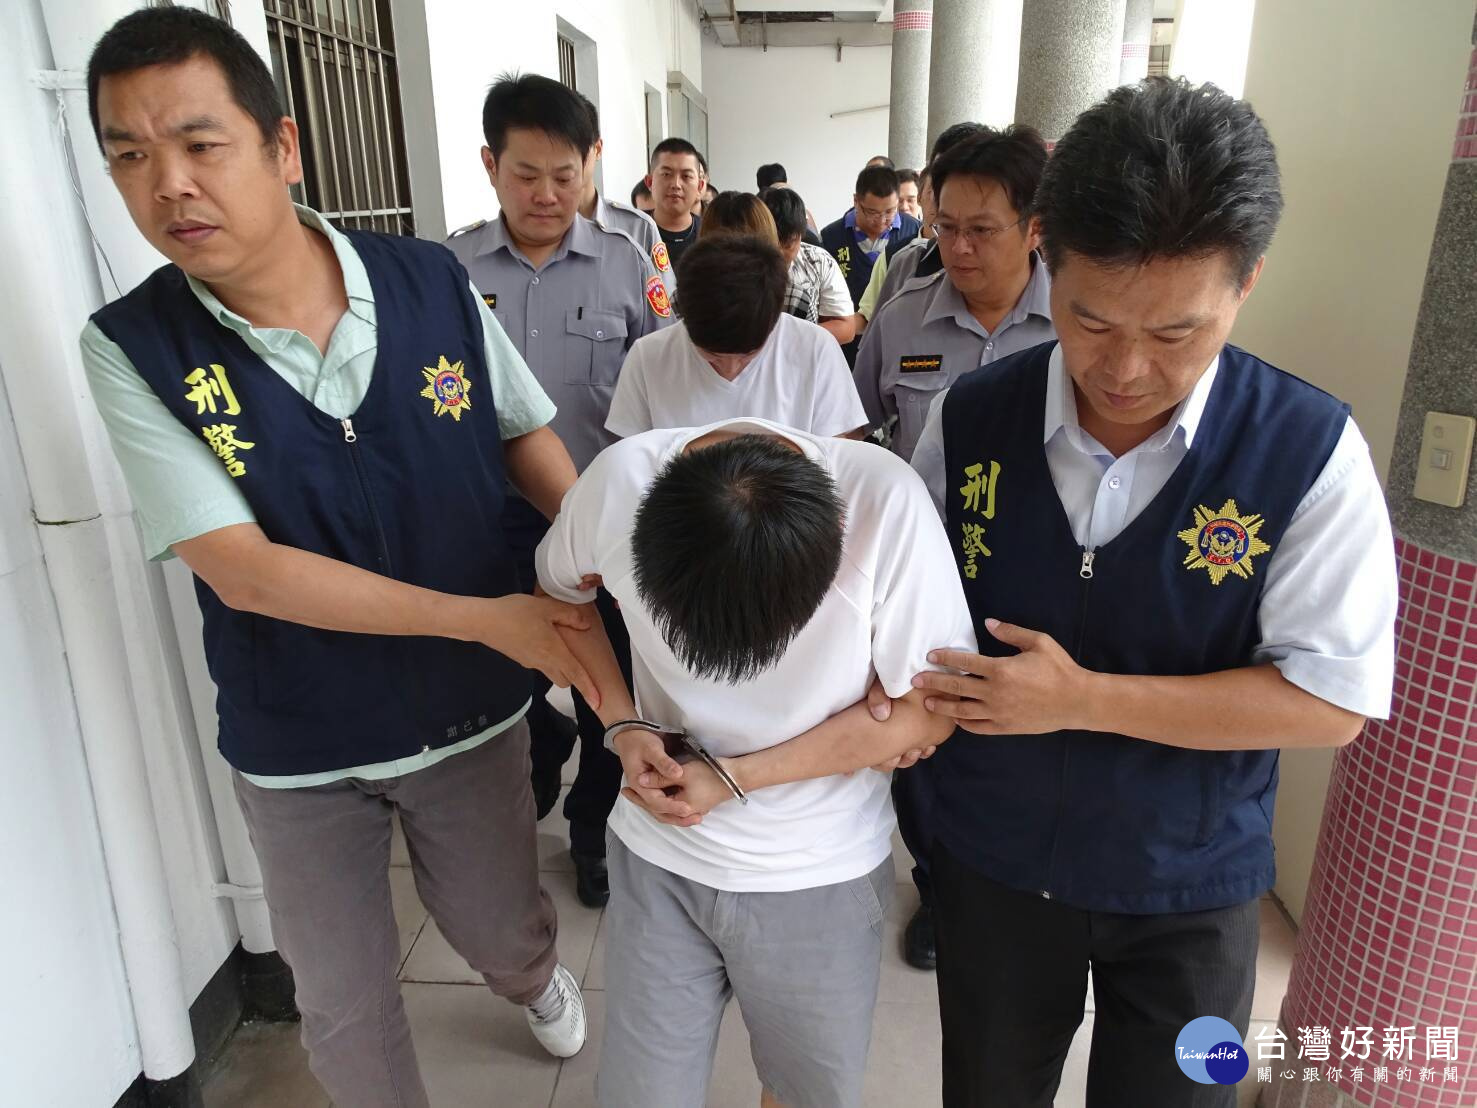 楊梅分局破獲主嫌陳○安(男、30歲)所組織之販毒集團，一舉拘捕共犯9人到案。